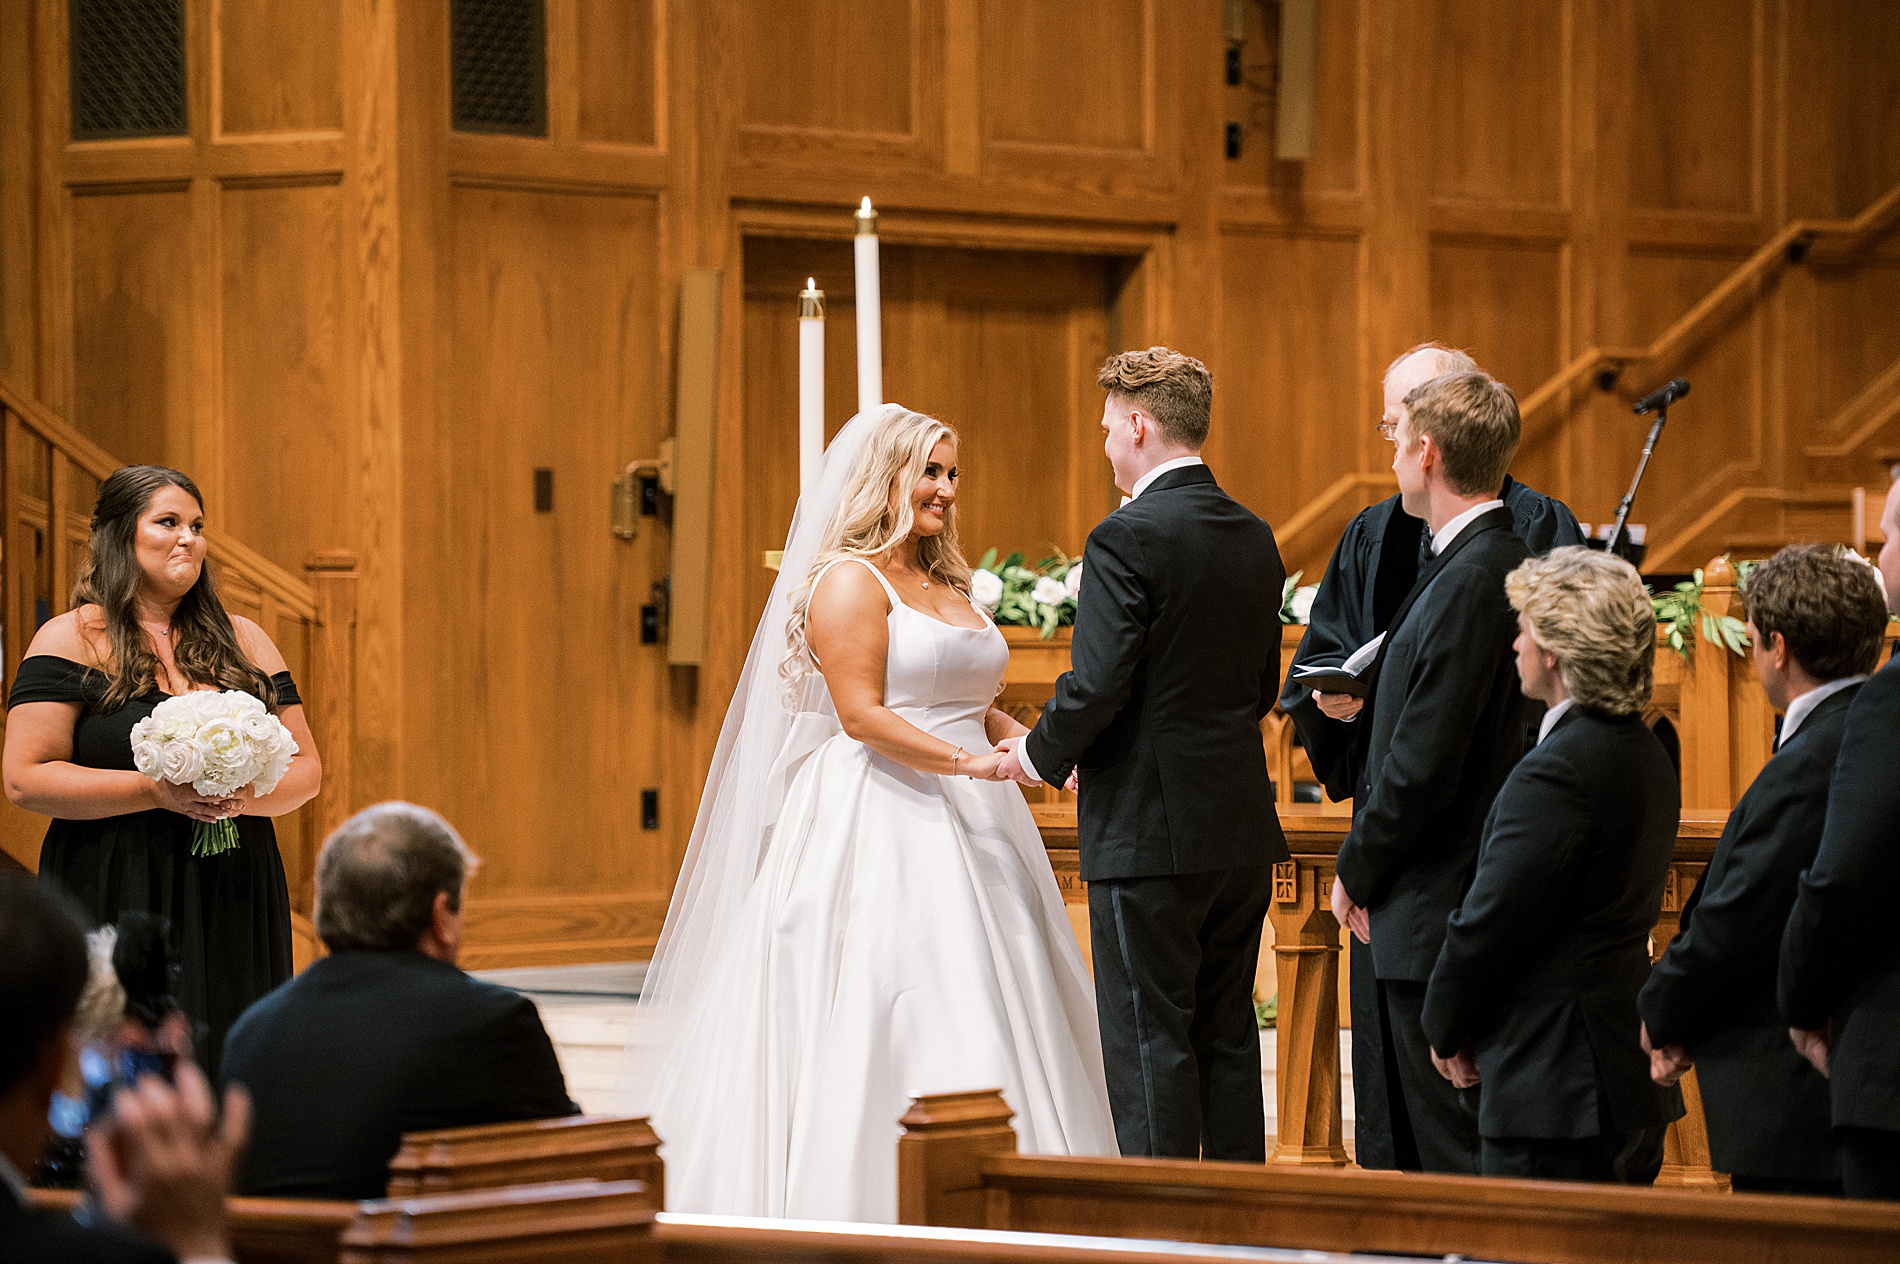 couple exchange vows at wedding ceremony